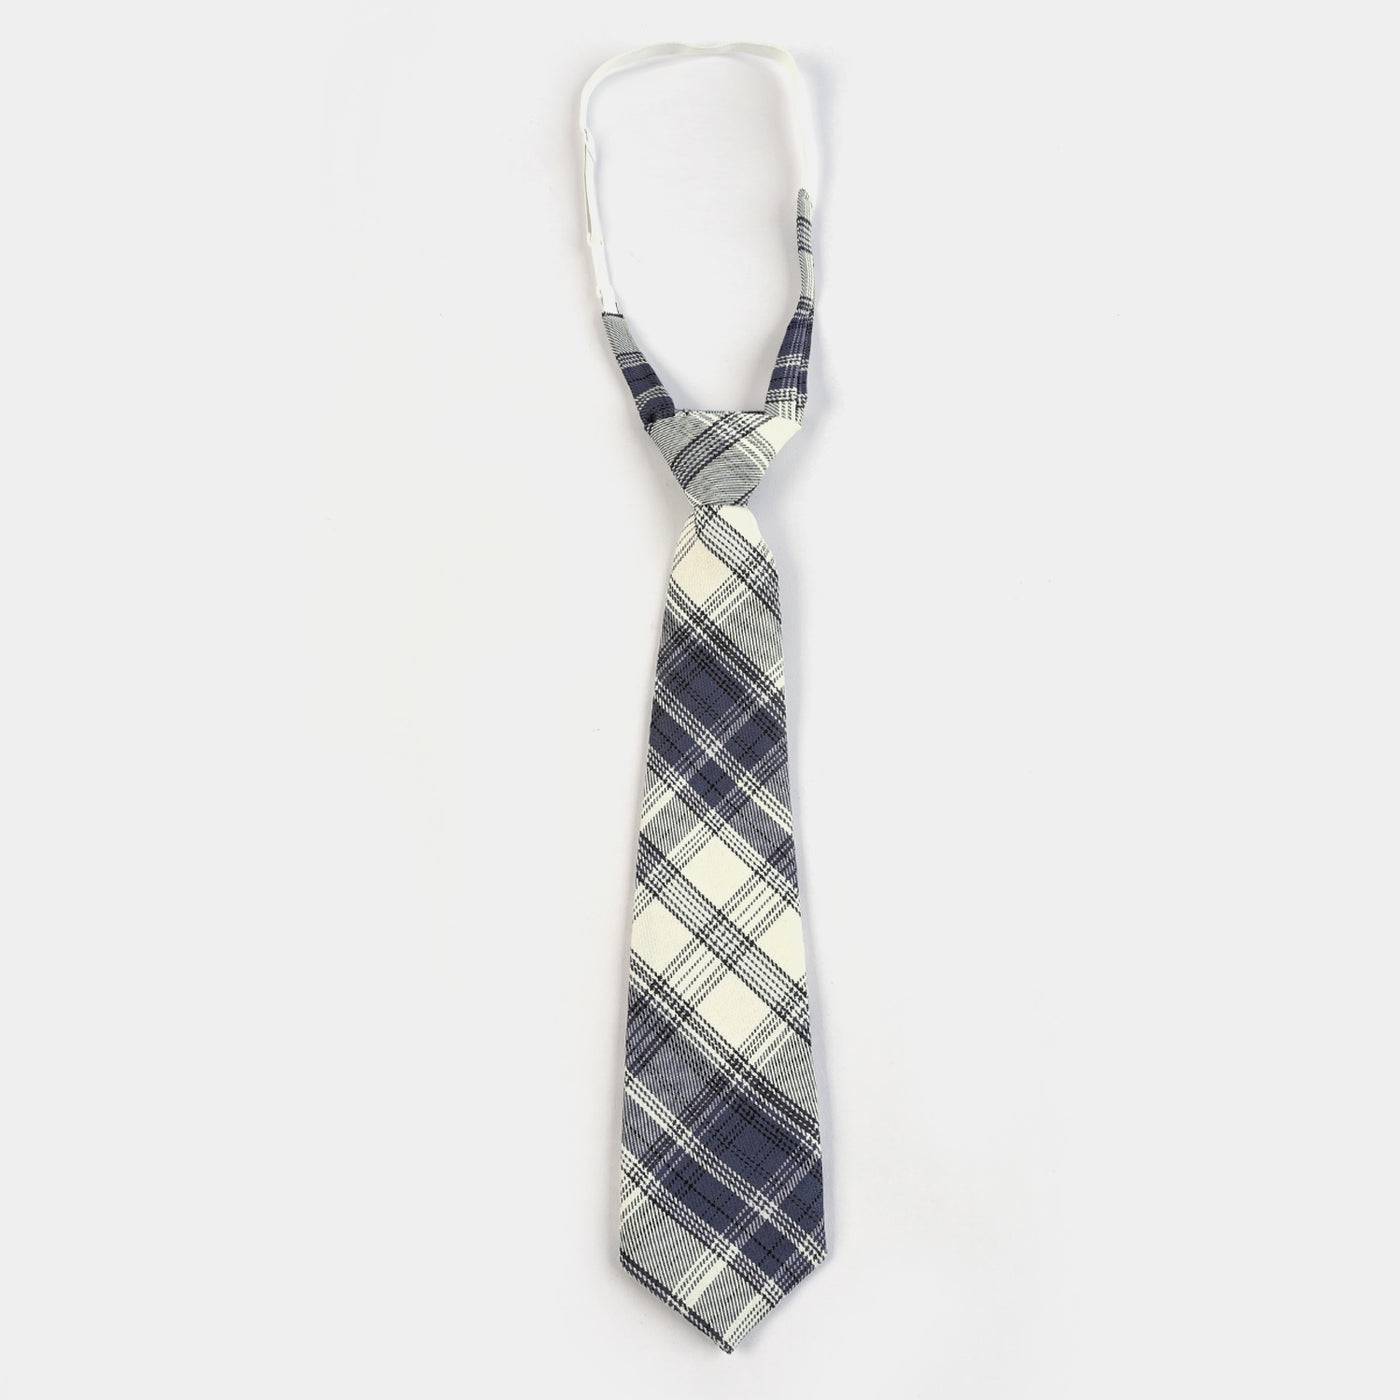 Elegant Style Adjustable Boys Tie